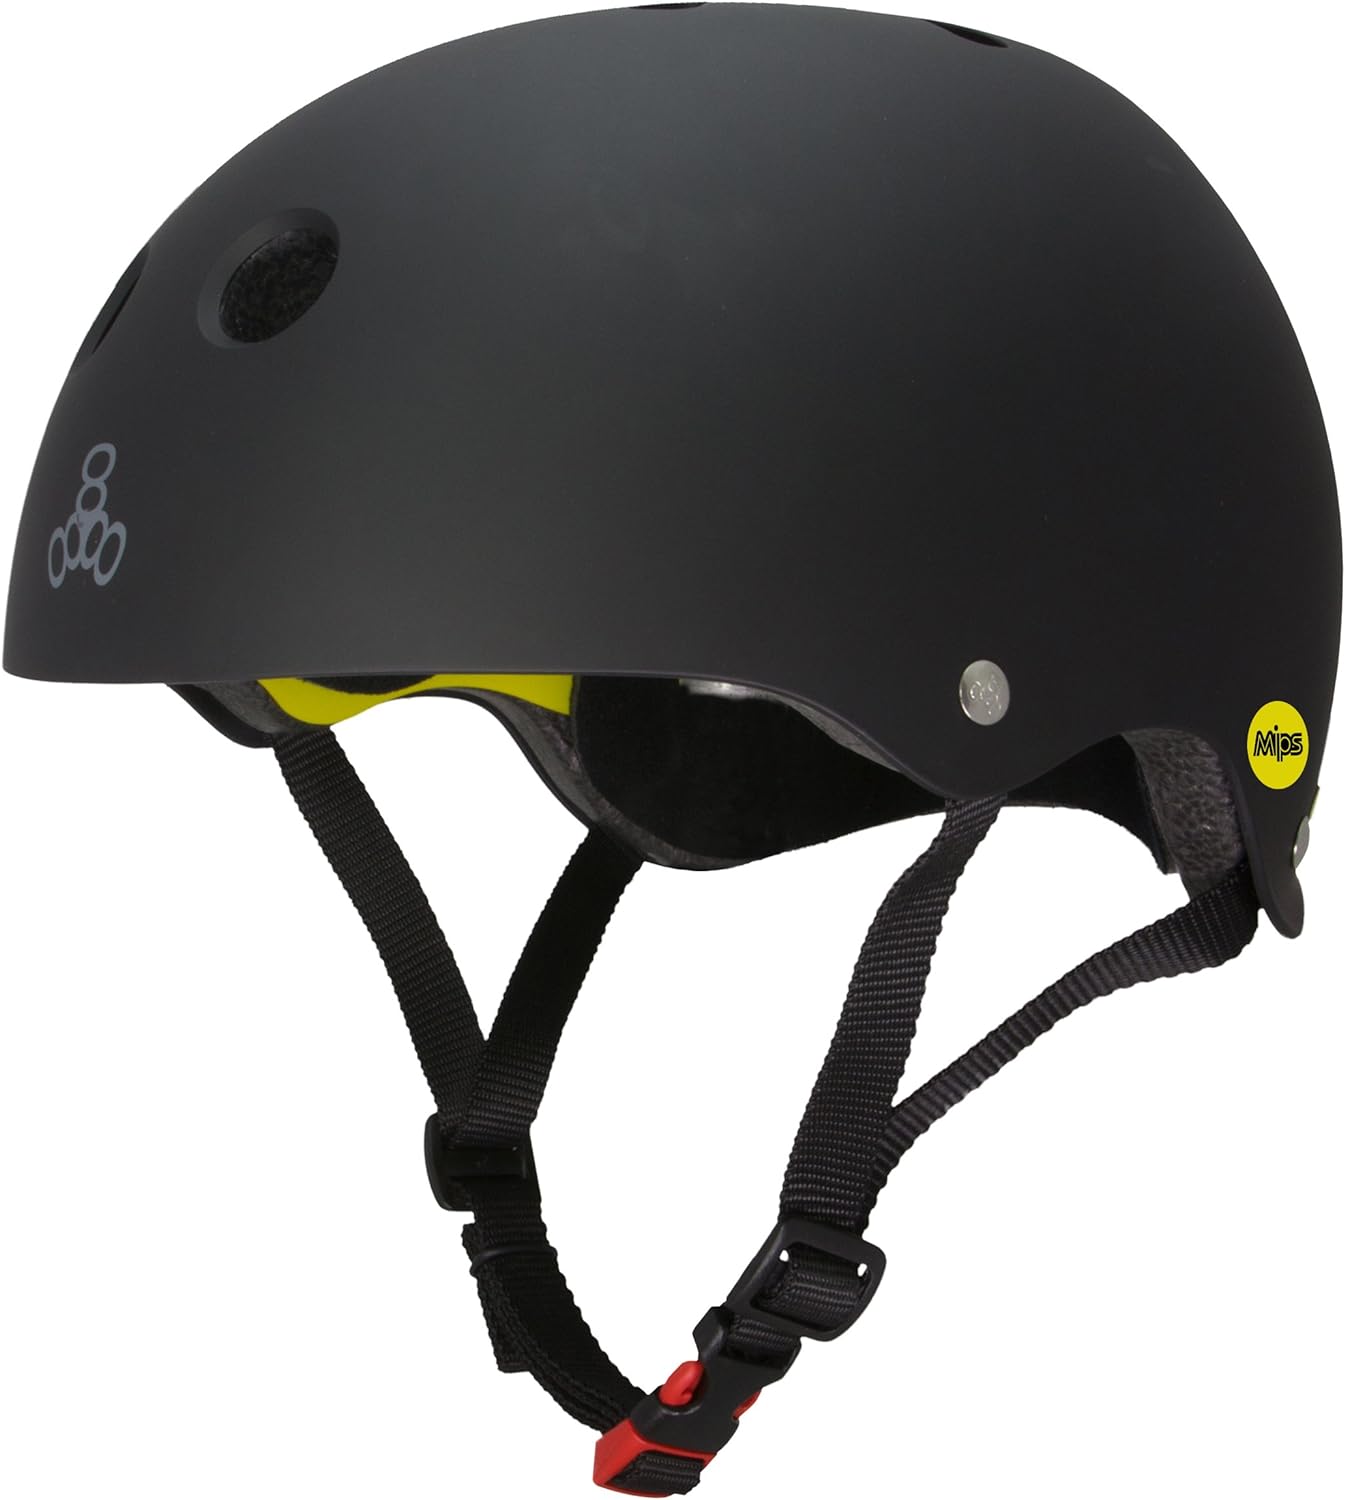 Tripple 8 Dual Certified MIPS Helmet Black Rubber